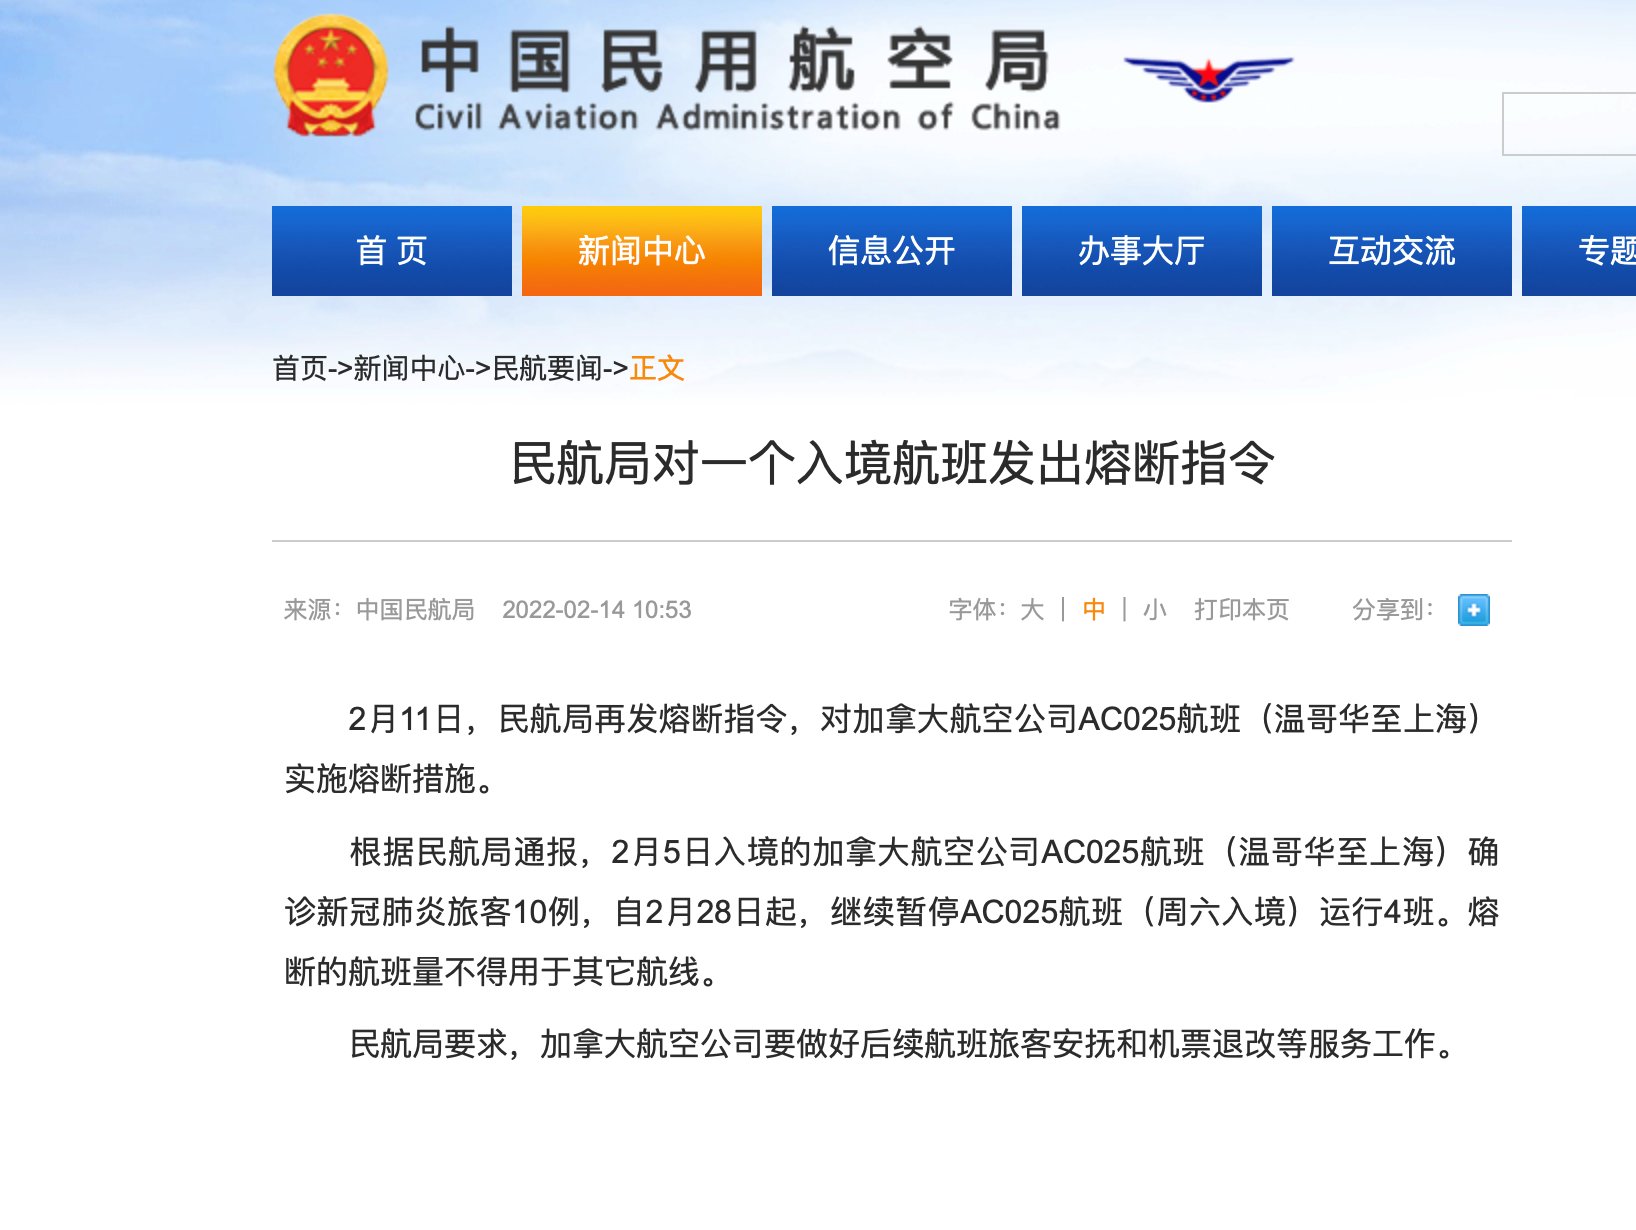 新冠肺炎|民航局对温哥华至上海AC025航班实施熔断措施